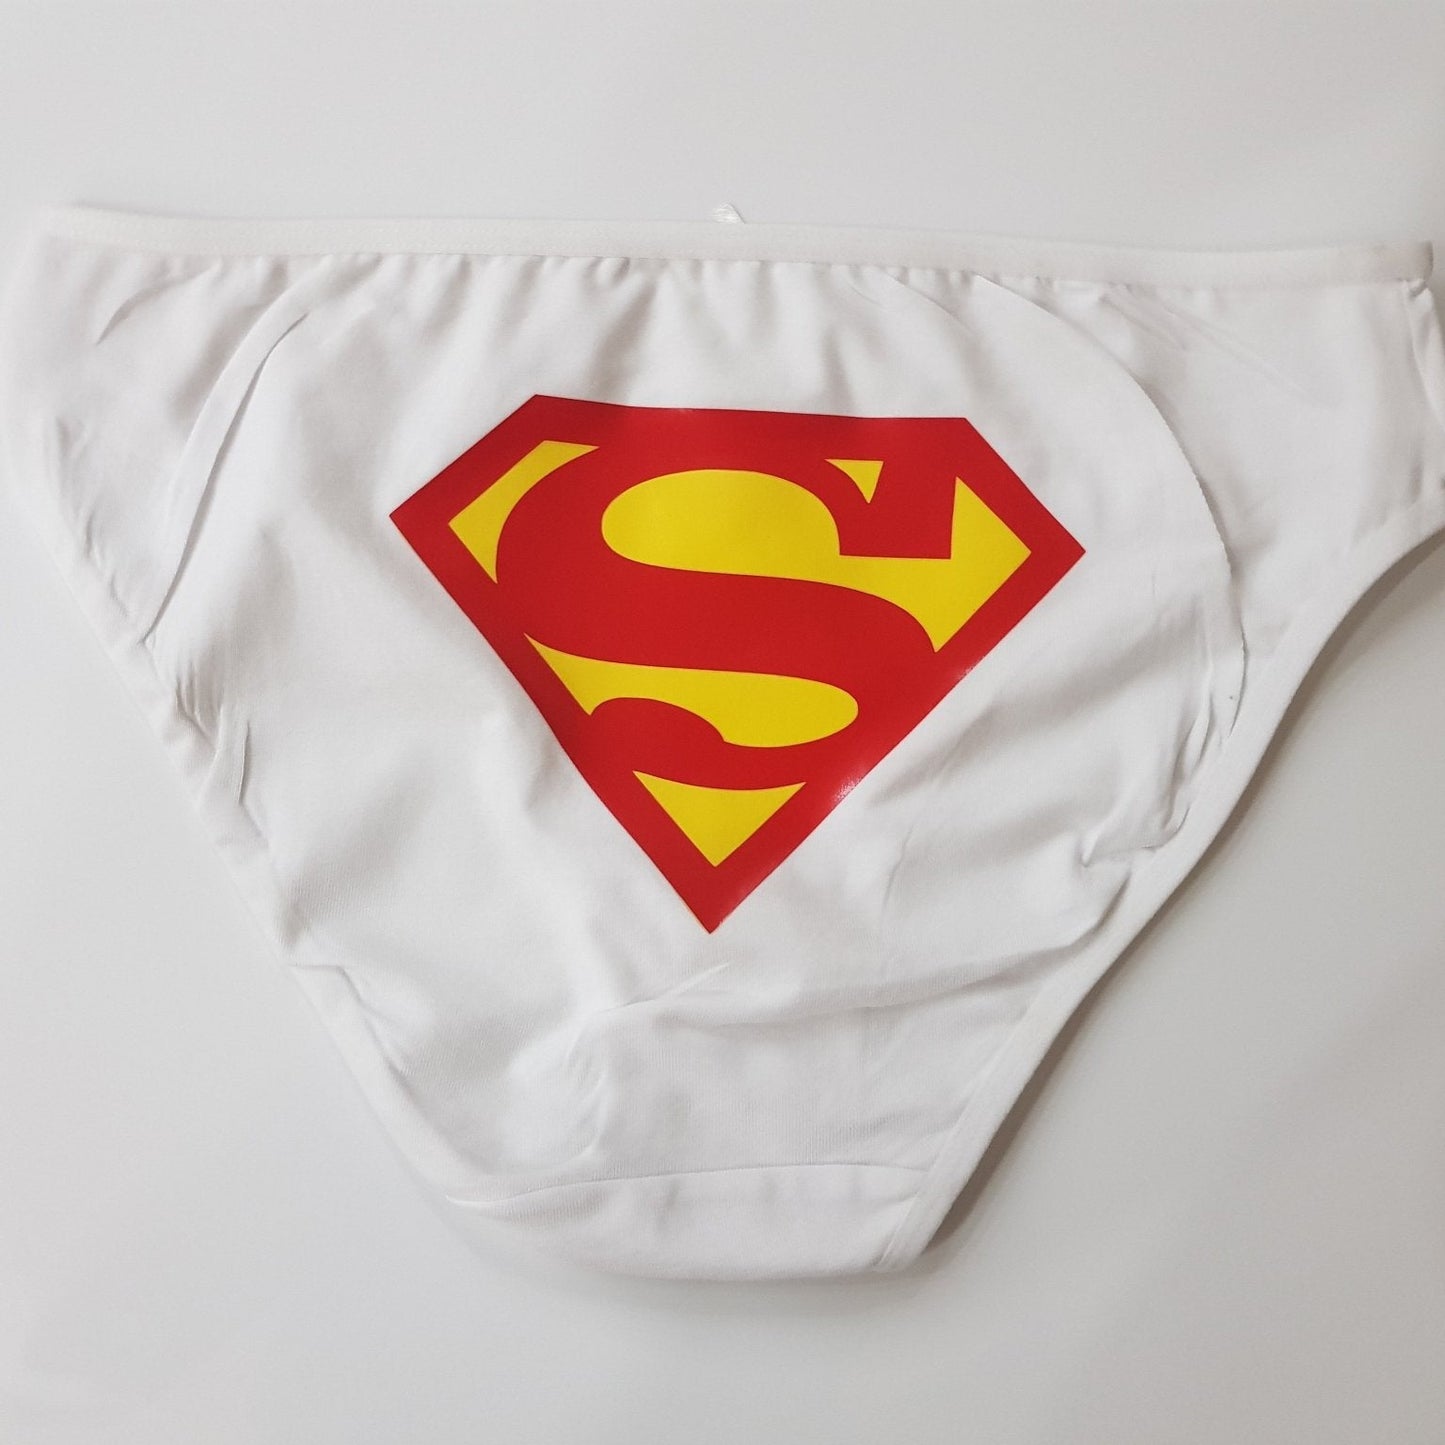 Women underwear - Superwoman - Etba3lly